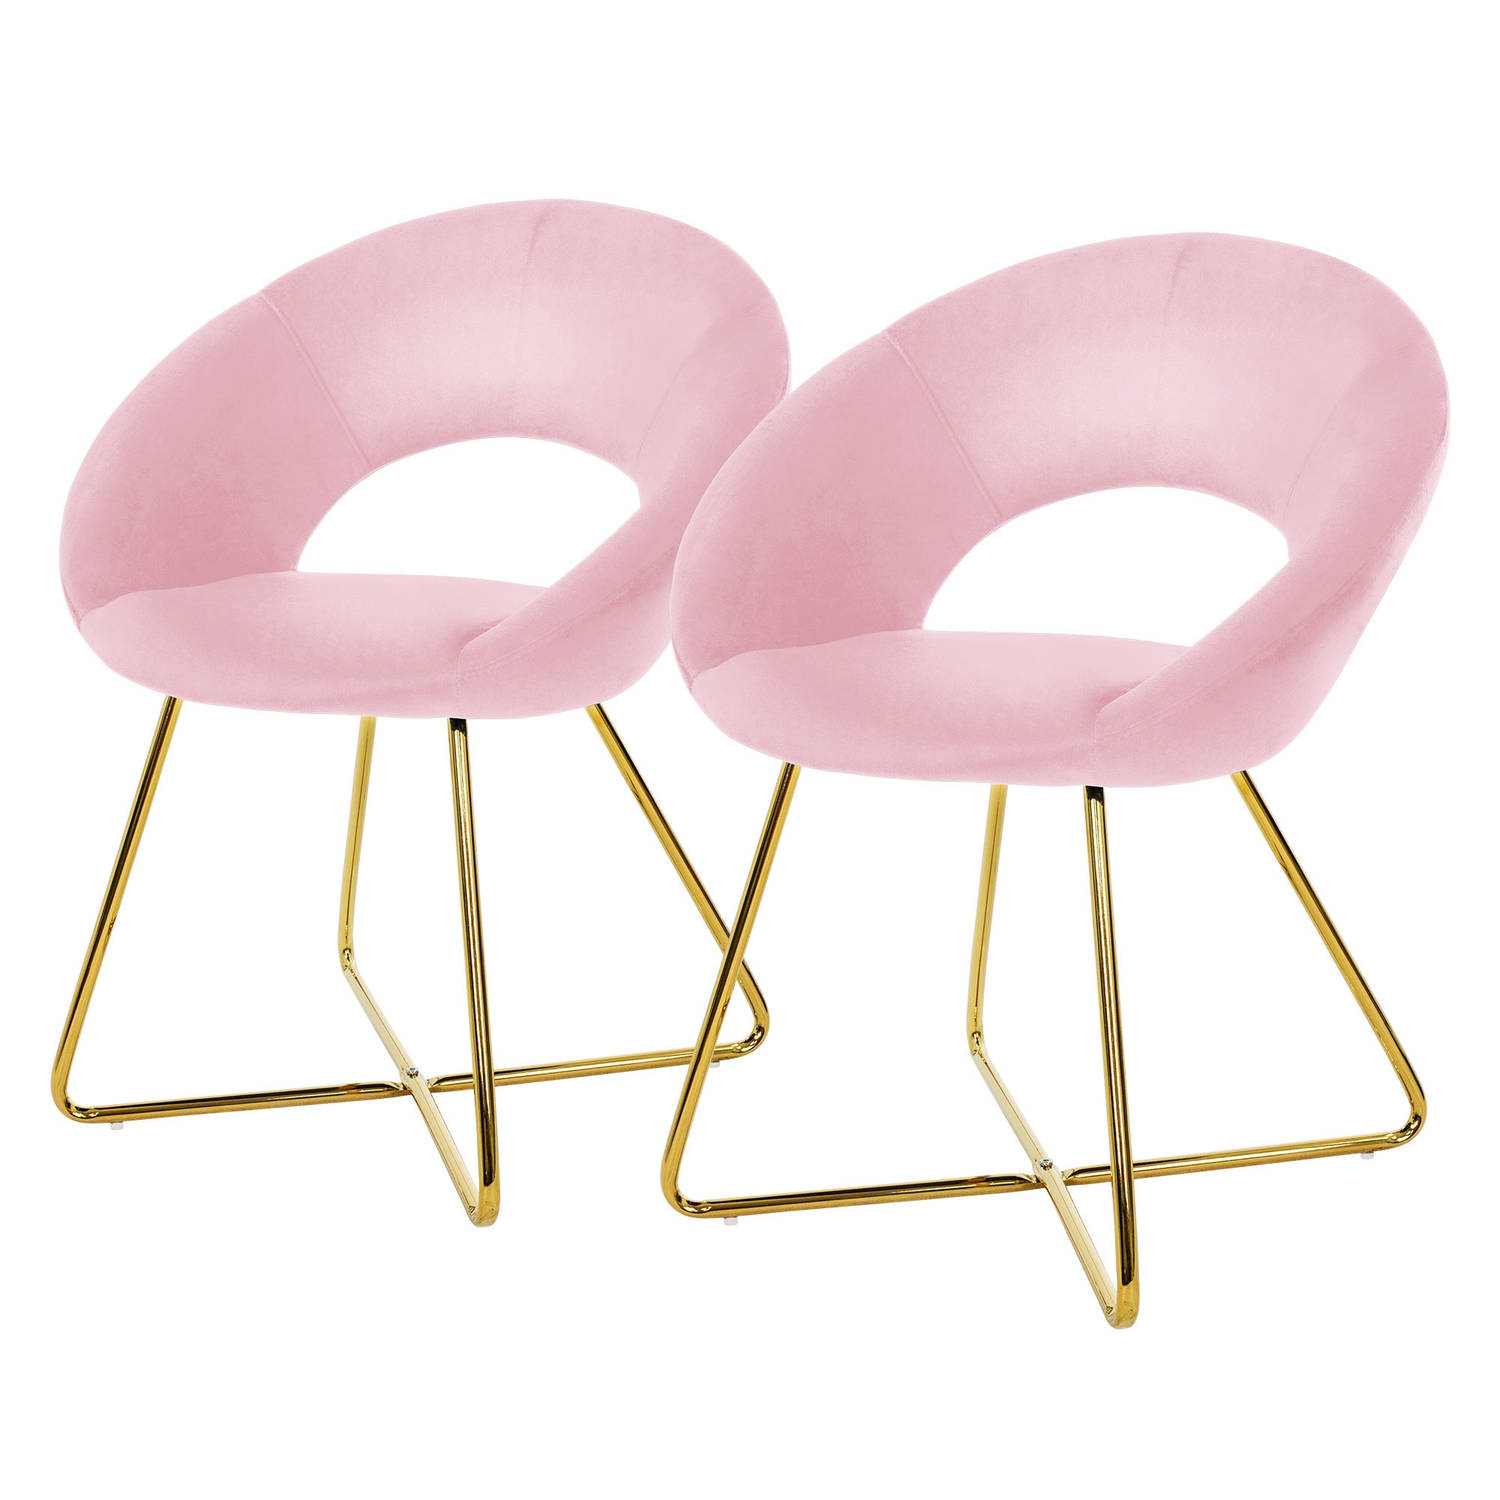 ML-Design eetkamerstoelen set van 2 roze fluweel, woonkamerstoel met ronde rugleuning, gestoffeerde stoel met gouden metalen poten, ergonomische eettafel fauteuil, keukenstoel kuip